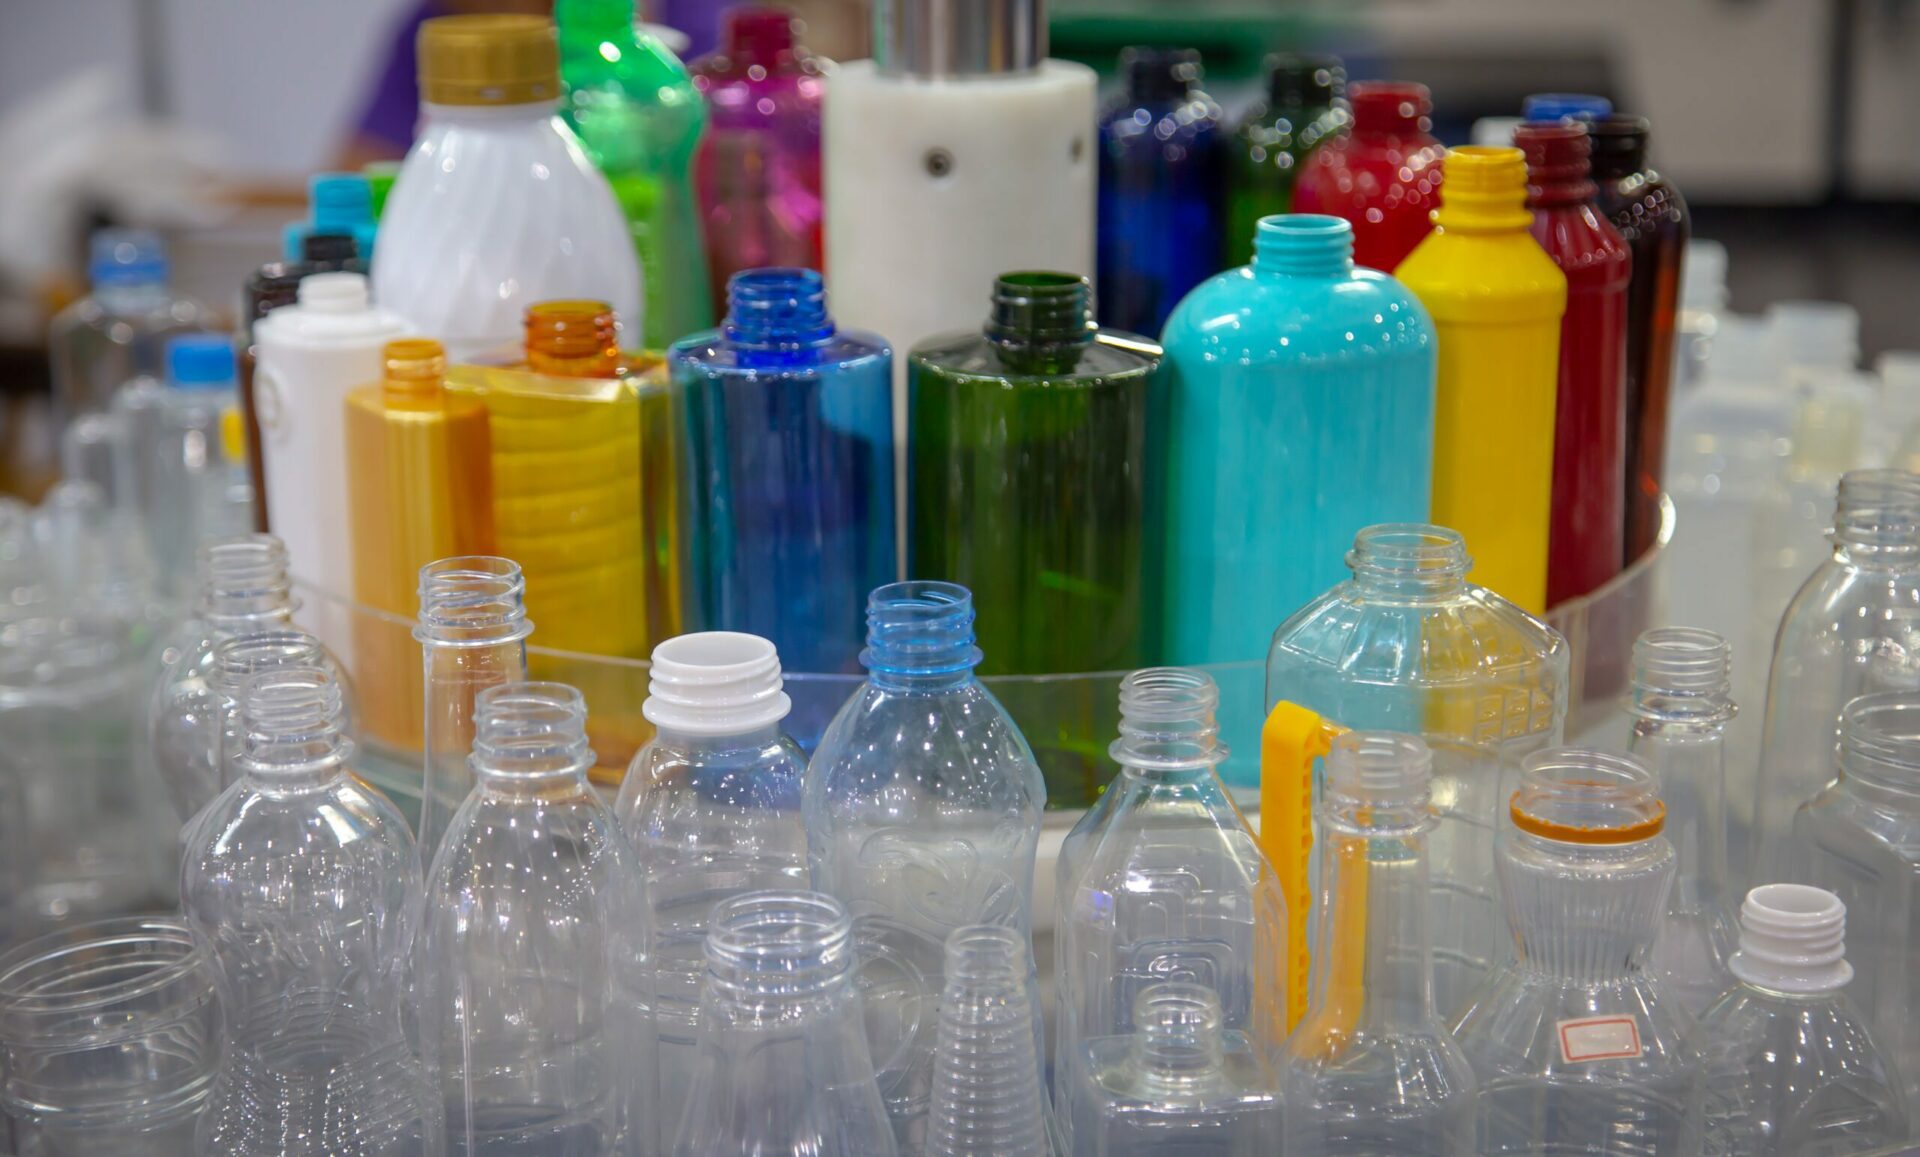 Les produits en plastique, y compris les microplastiques, sont préoccupants en raison de leur présence désormais inébranlable à l'échelle mondiale, lessivant les perturbateurs endocriniens dans l'environnement.